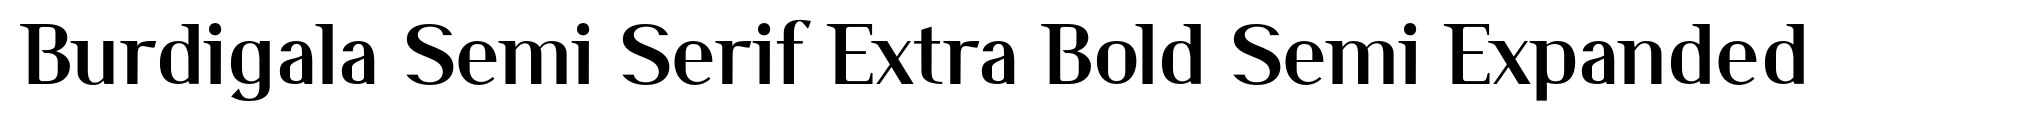 Burdigala Semi Serif Extra Bold Semi Expanded image